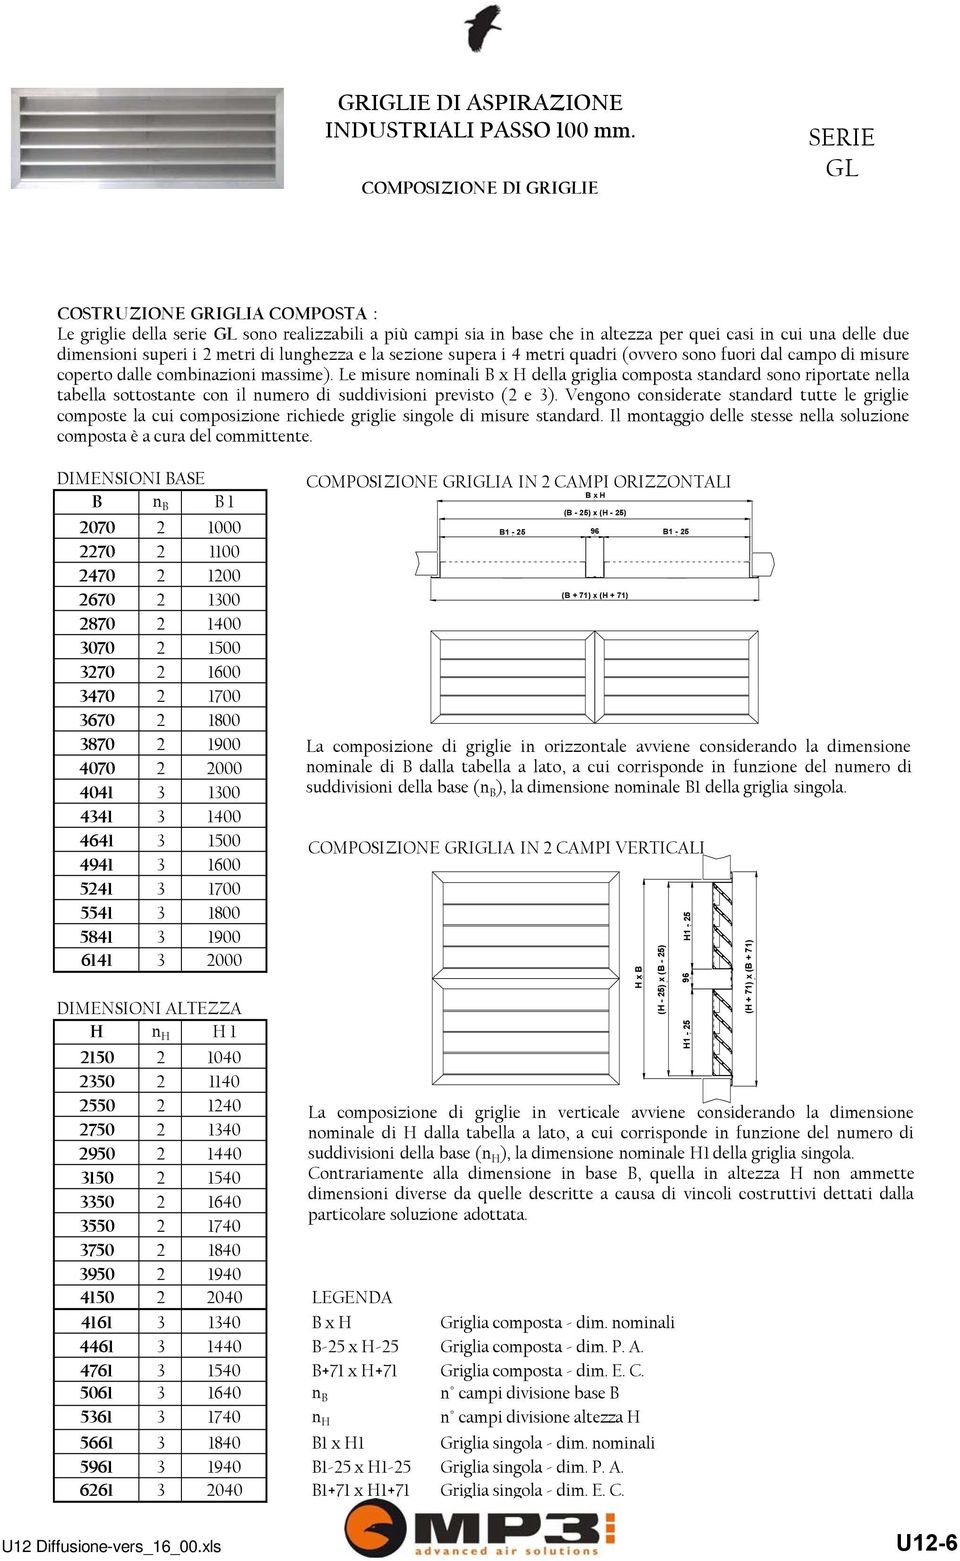 dimensionisuperiimetridilunghezzaelasezionesuperai4metriquadri(ovverosonofuoridalcampodimisure coperto dalle combinazioni massime).